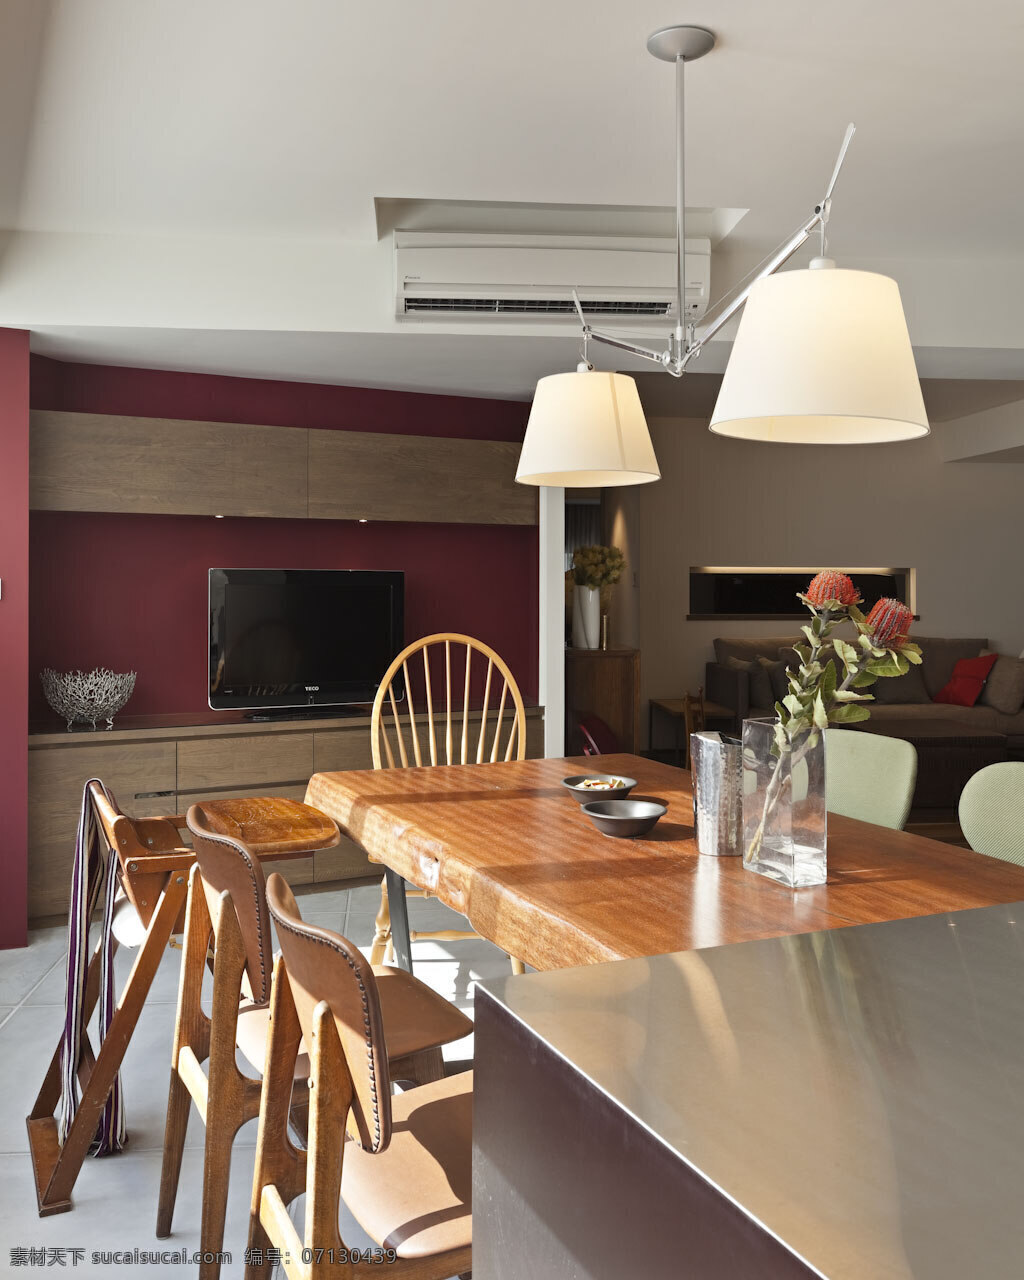 室内 餐厅 现代 环保 装修 效果图 实木原色 简约餐桌椅 喇叭型吊灯 清新花艺 白色吊顶